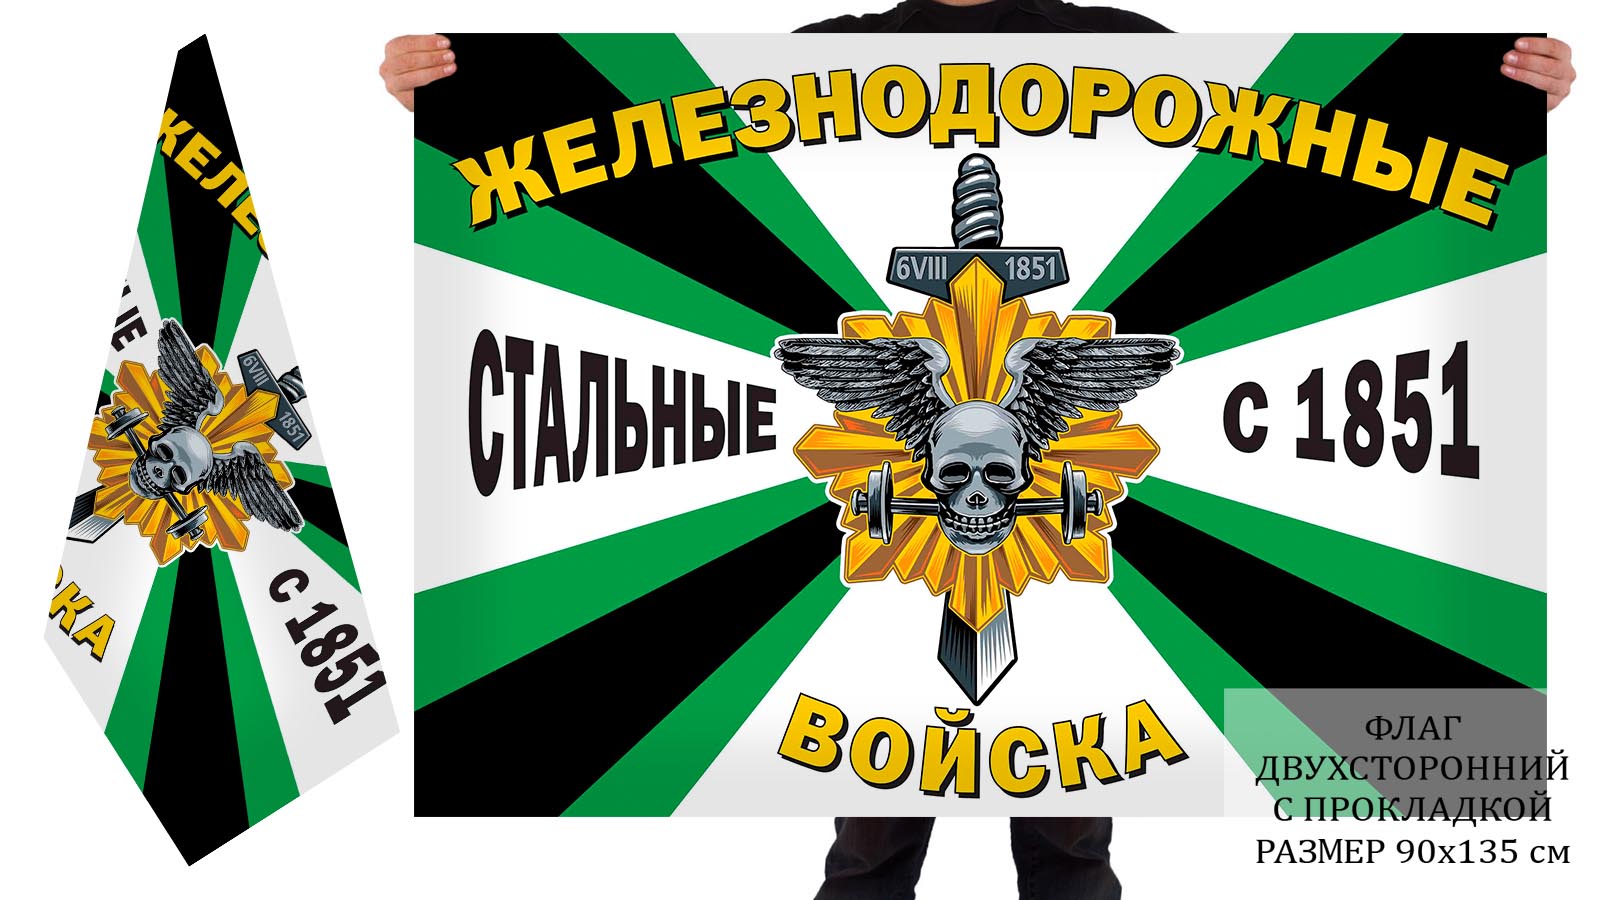 Двусторонний флаг Железнодорожных войск "Стальные с 1851 года"